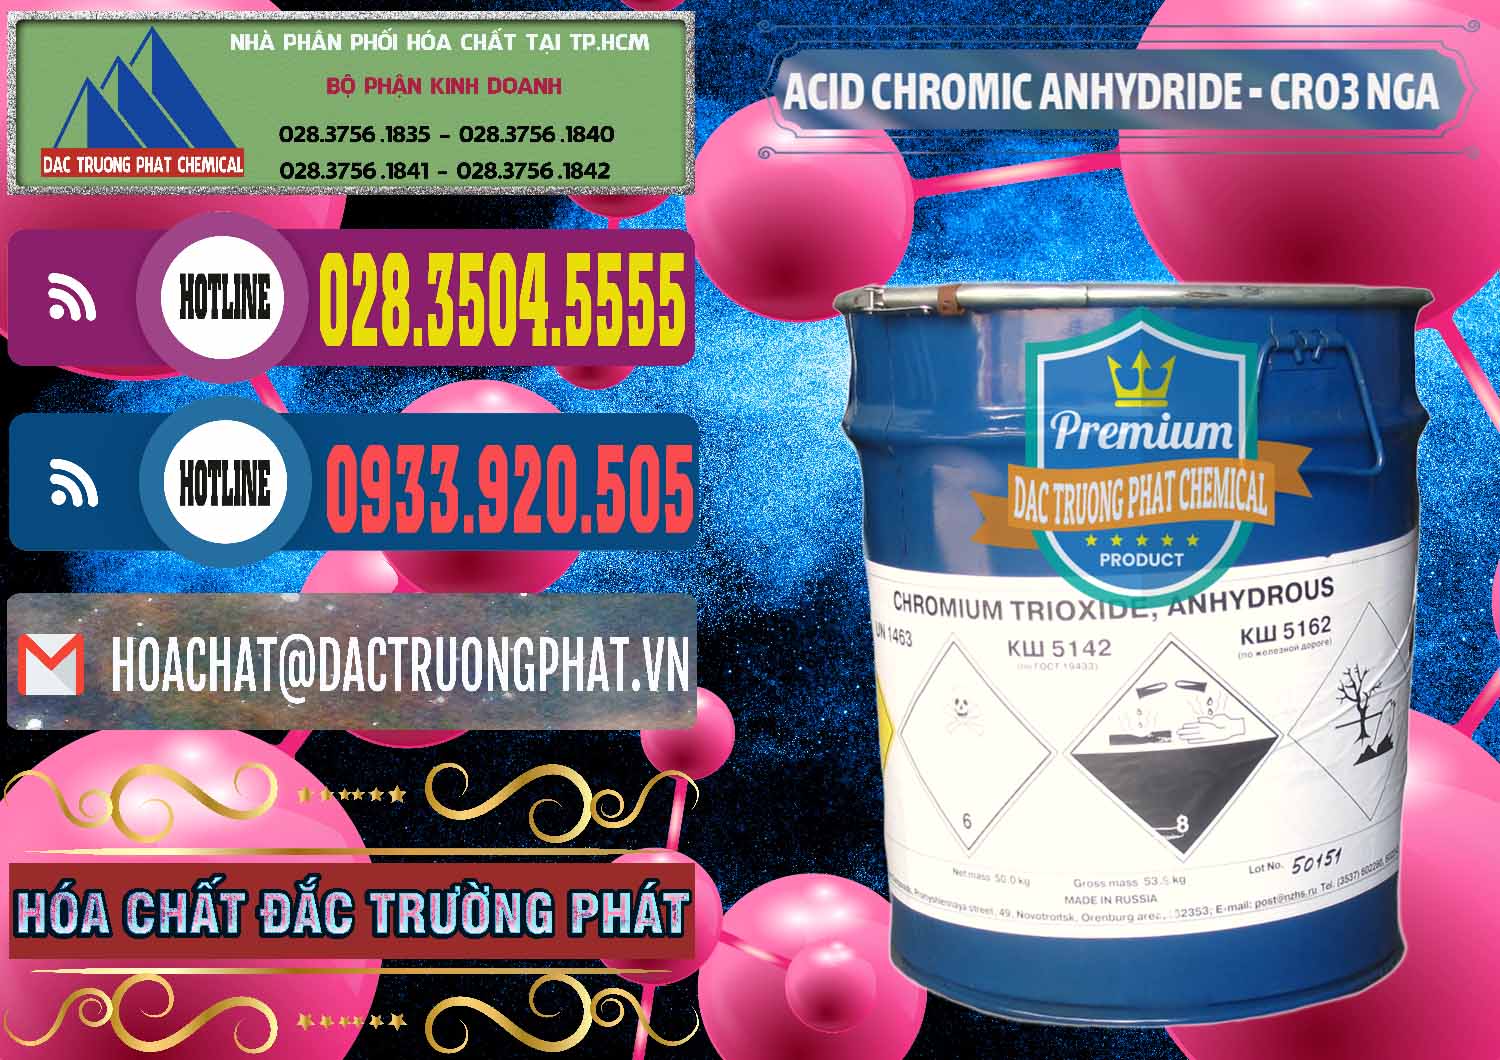 Cty bán - cung cấp Acid Chromic Anhydride - Cromic CRO3 Nga Russia - 0006 - Cty chuyên phân phối - bán hóa chất tại TP.HCM - muabanhoachat.com.vn